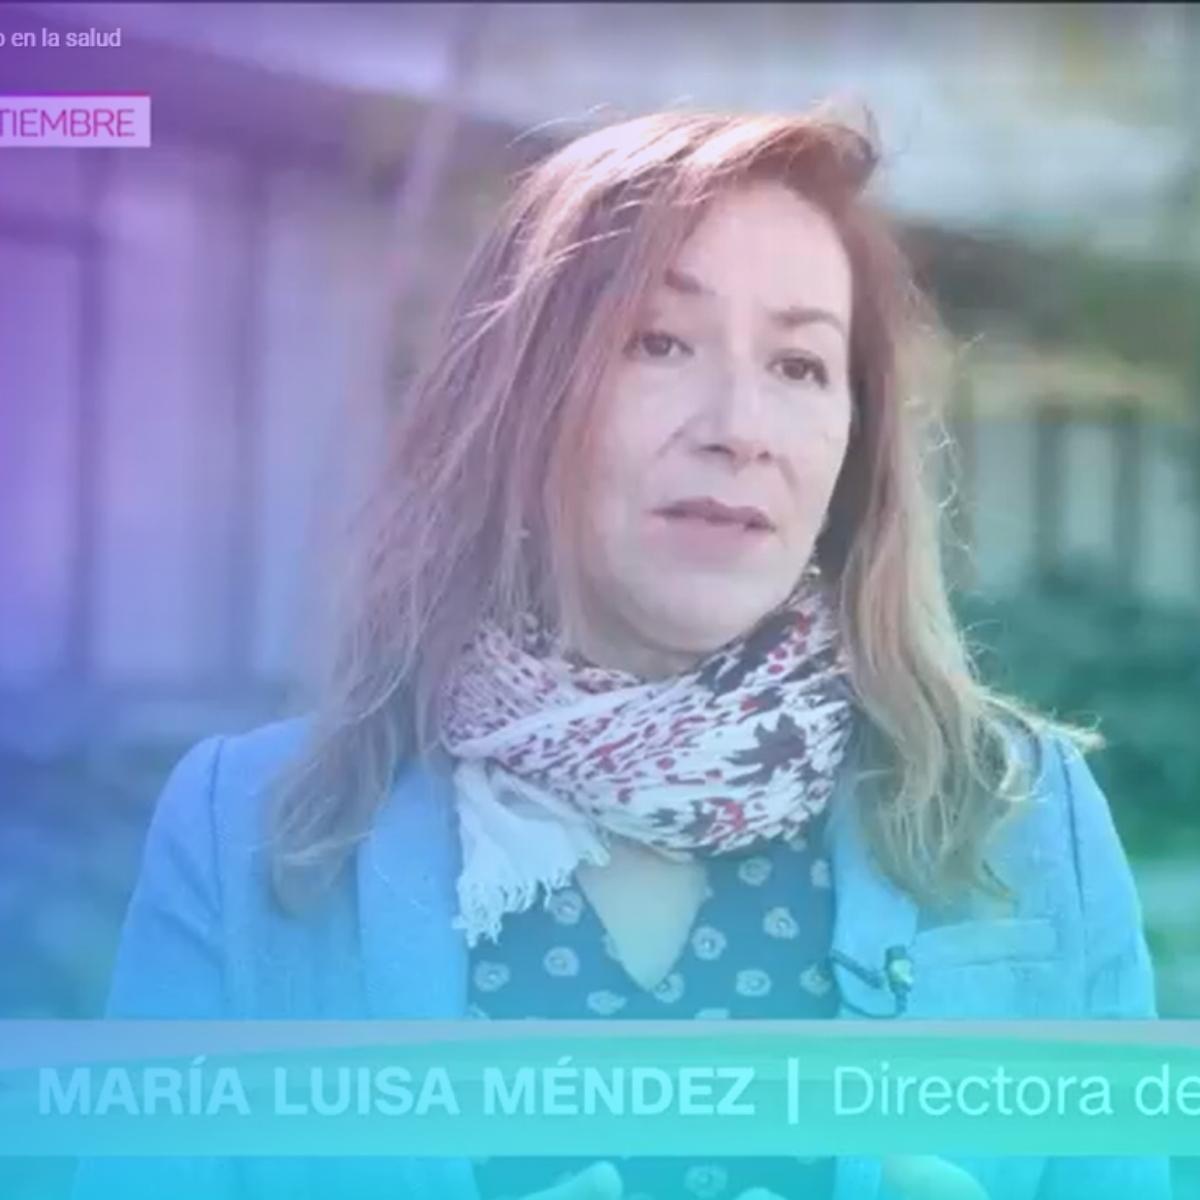 CNN Chile “Sana Mente” I María Luisa Méndez explicó cómo falta de planificación, estrés y ruido afectan salud de las personas